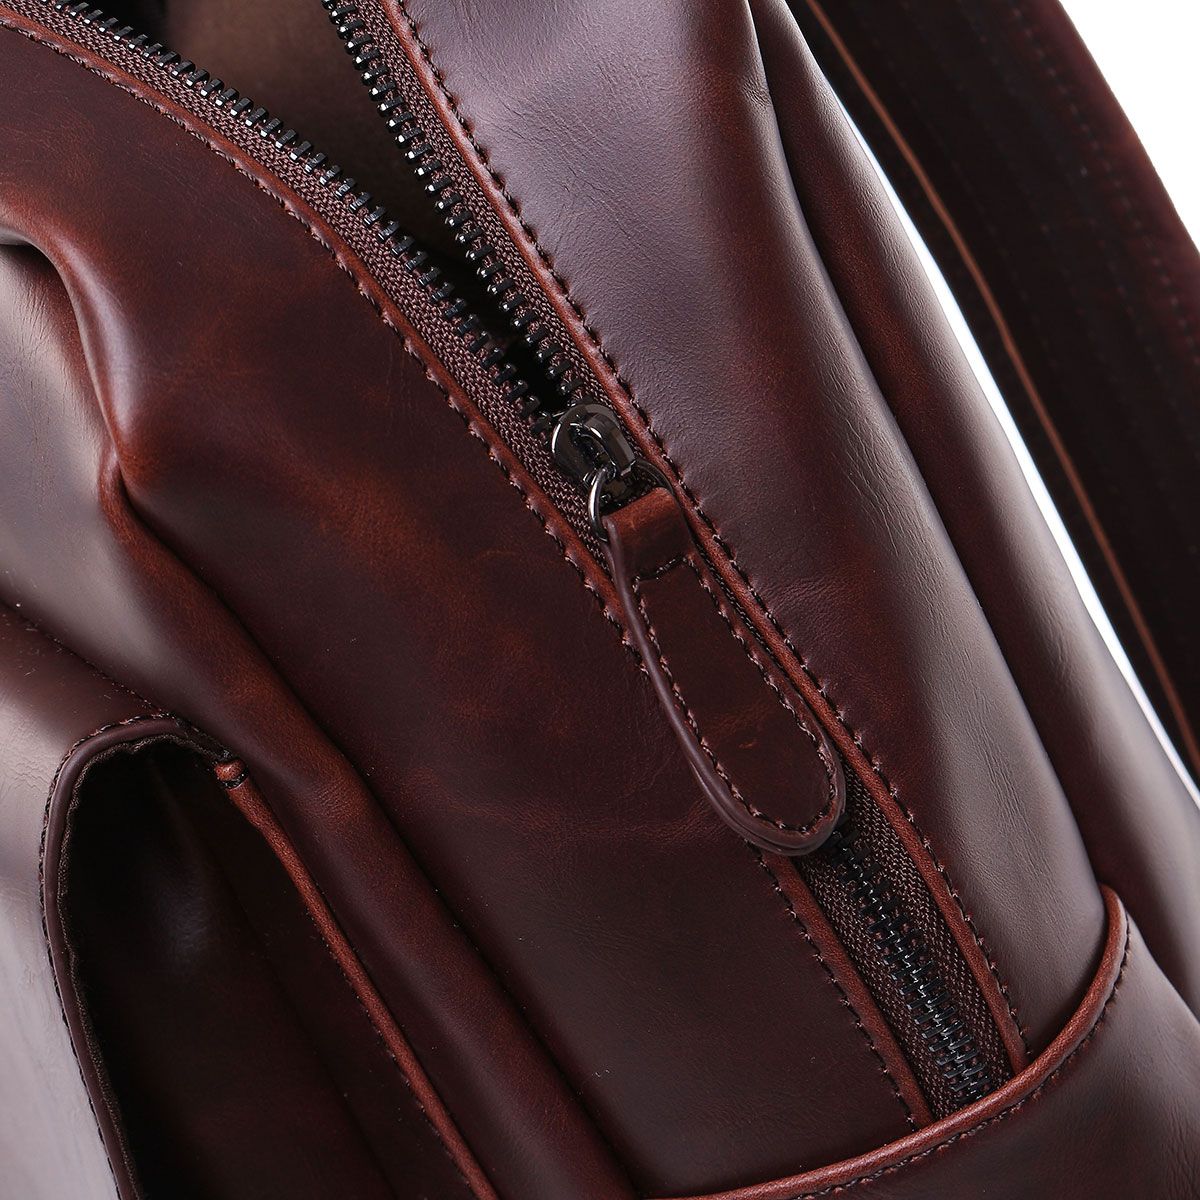 PU-Leather-Business-Backpack-Laptop-Bag-Retro-Mens-Bag-Schoolbag-Shoulders-Storage-Bag-Briefcase-for-1741848